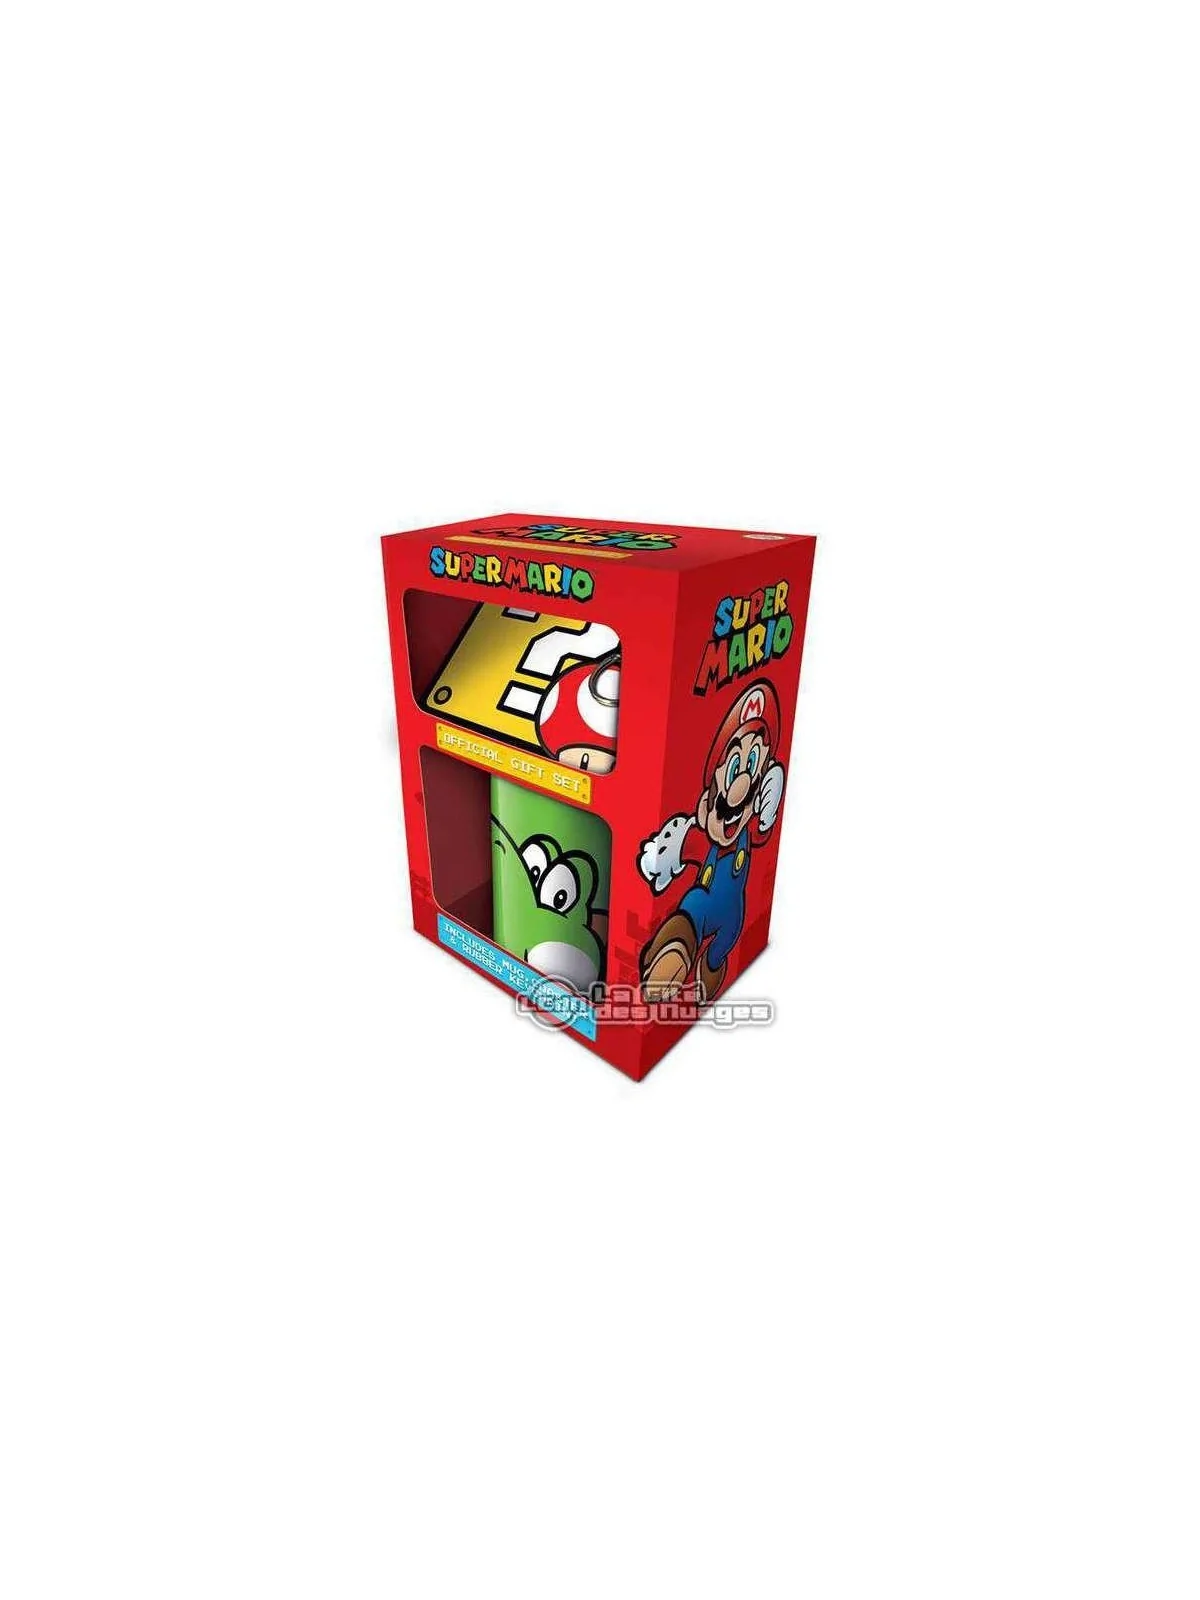 Comprar Set de Regalo Super Mario Yoshi barato al mejor precio 15,99 €